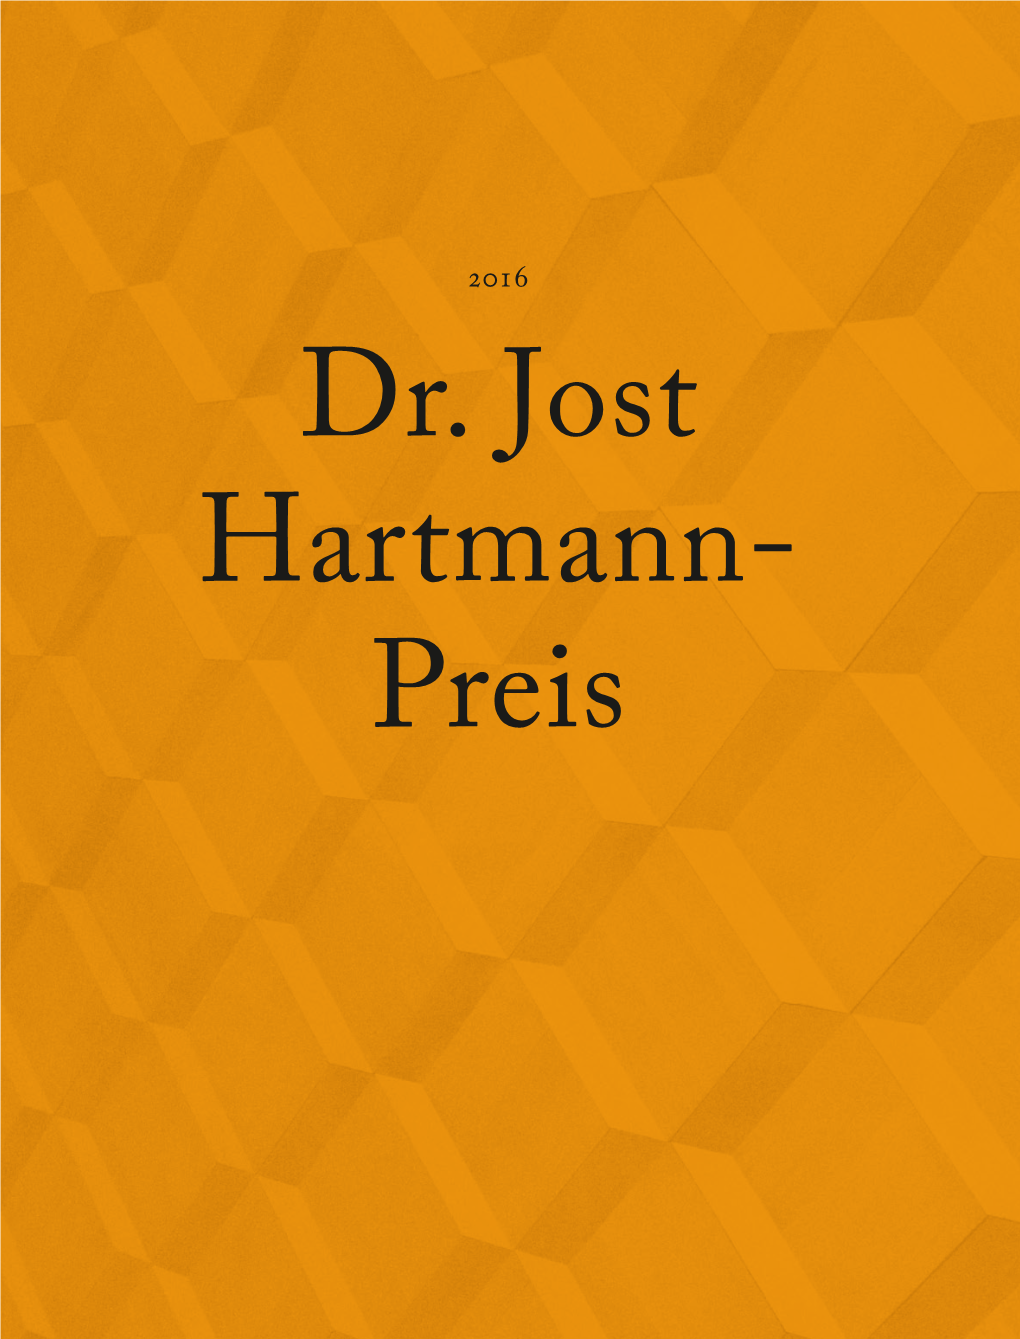 Dr. Jost Hartmann-Preis 2016